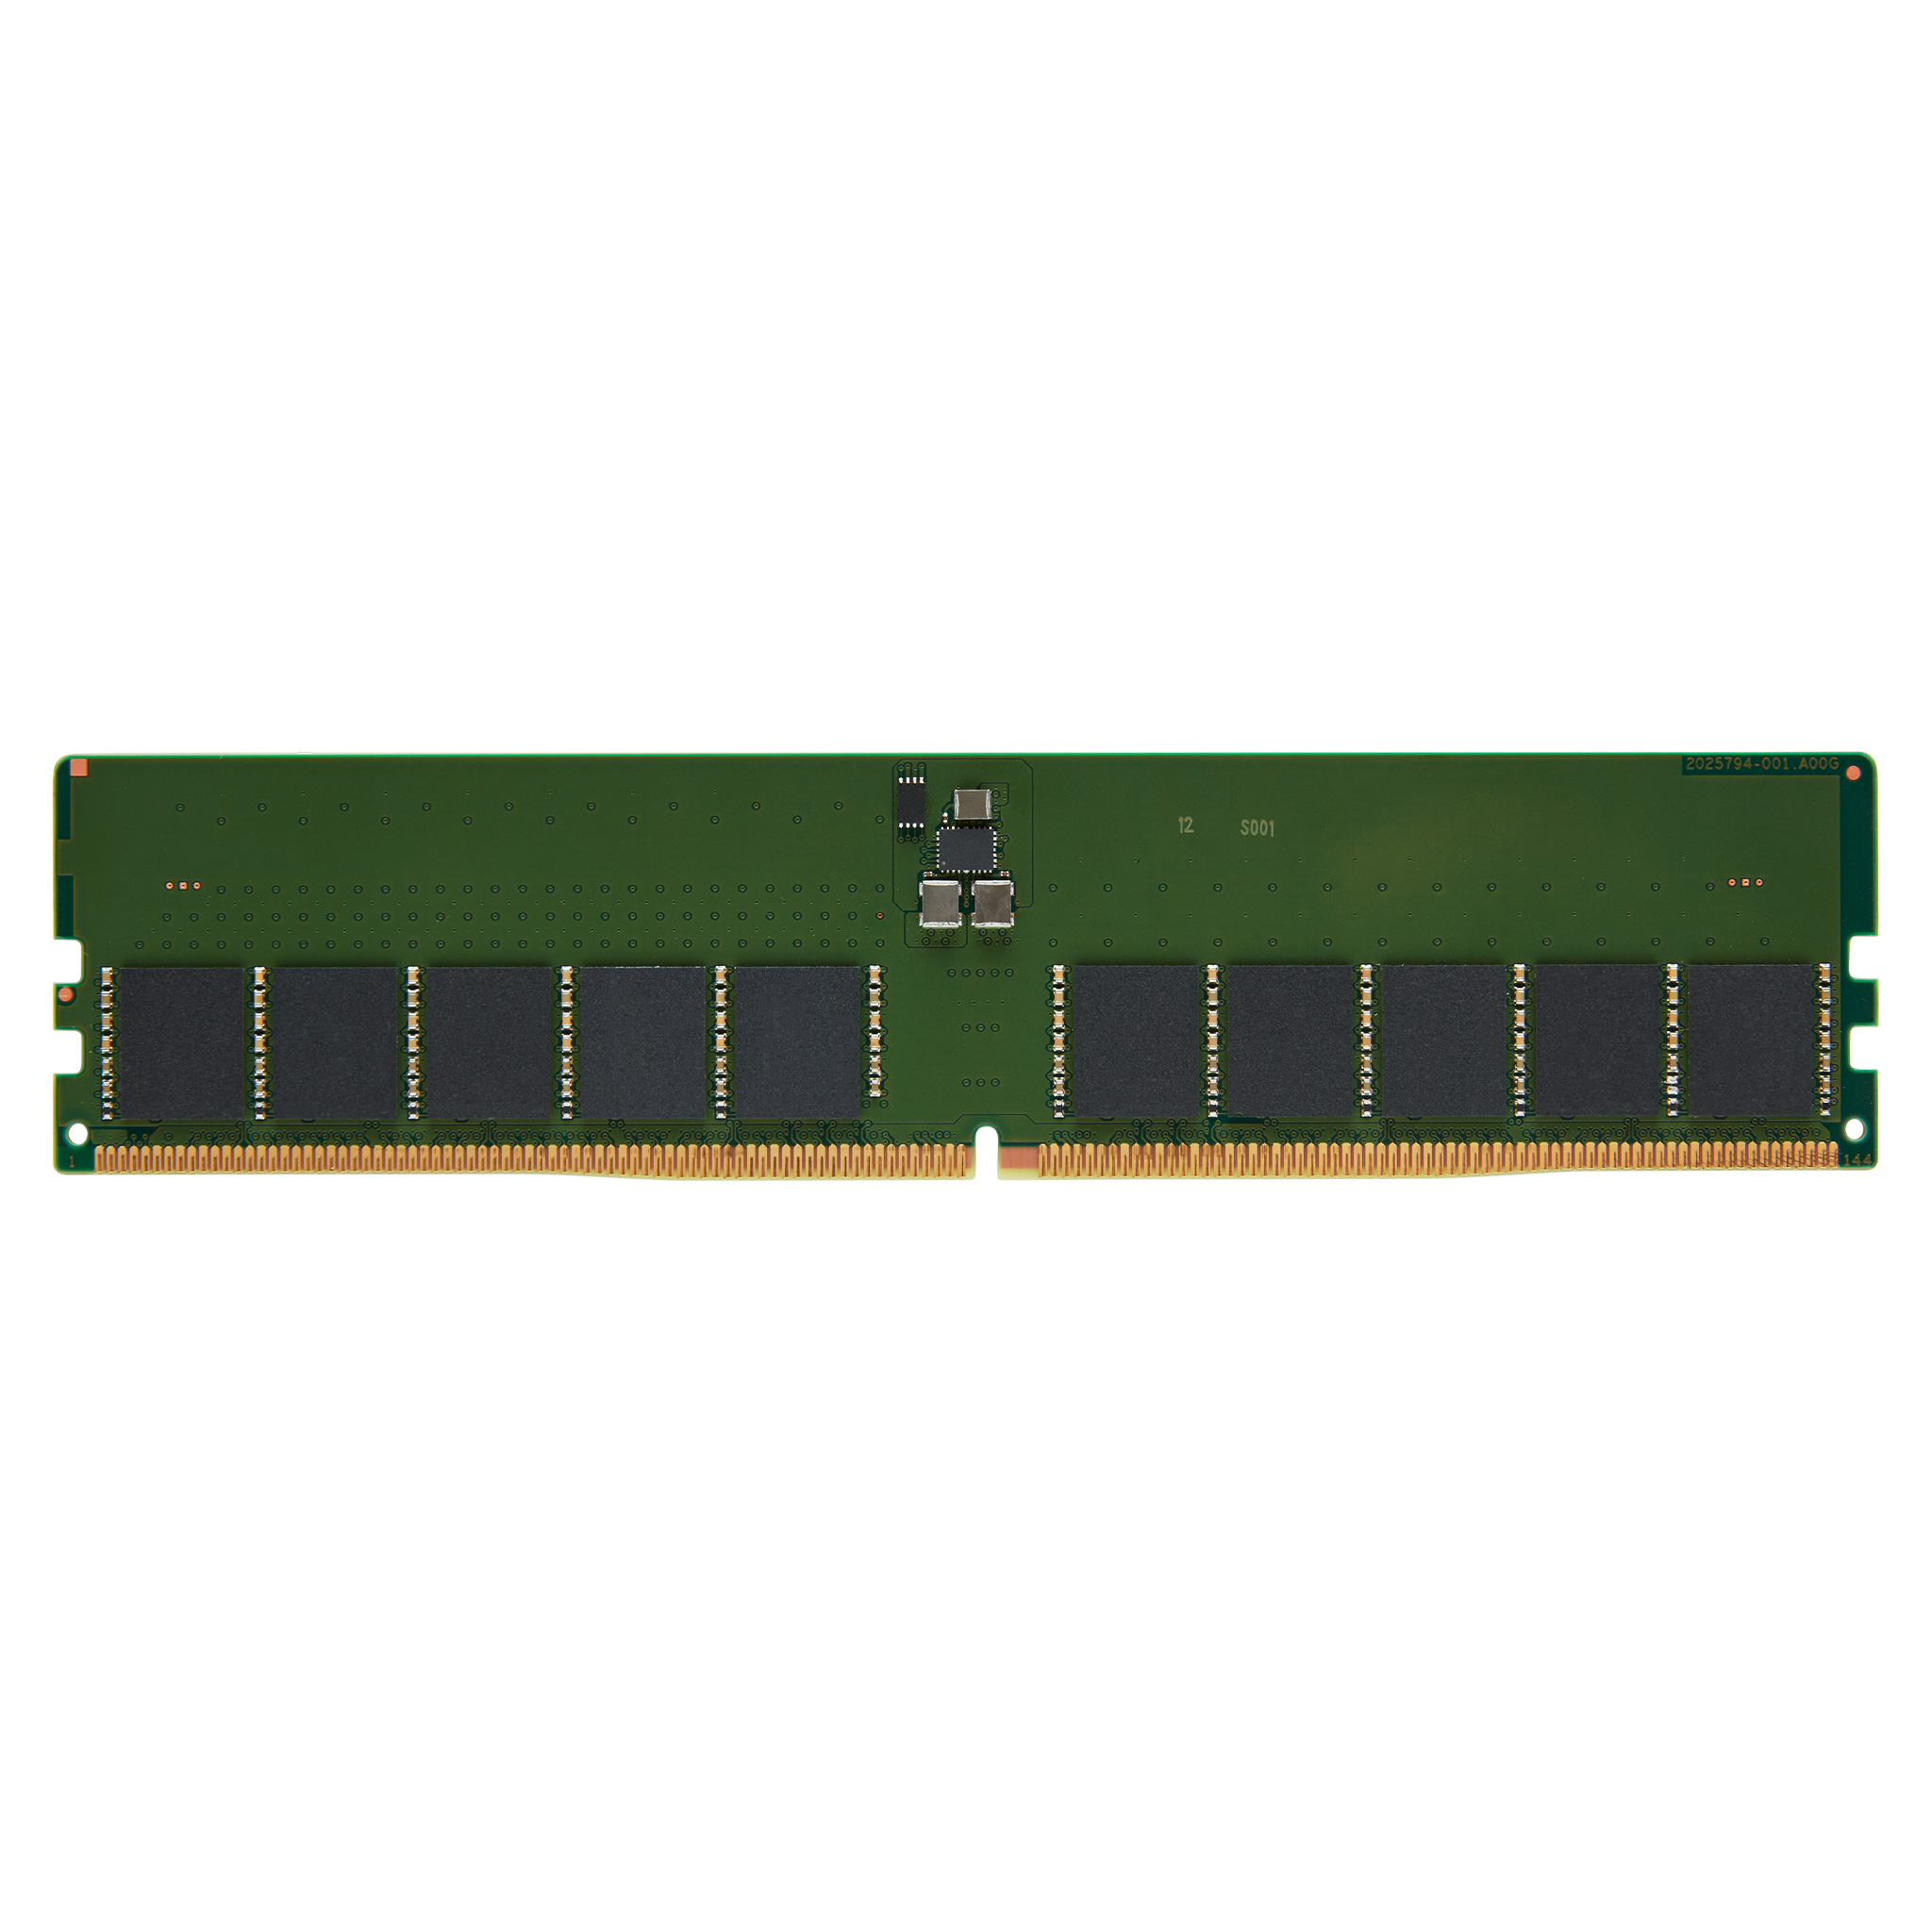 Kingston Server Memory: DDR4 3200MT/s ECC Registered DIMM